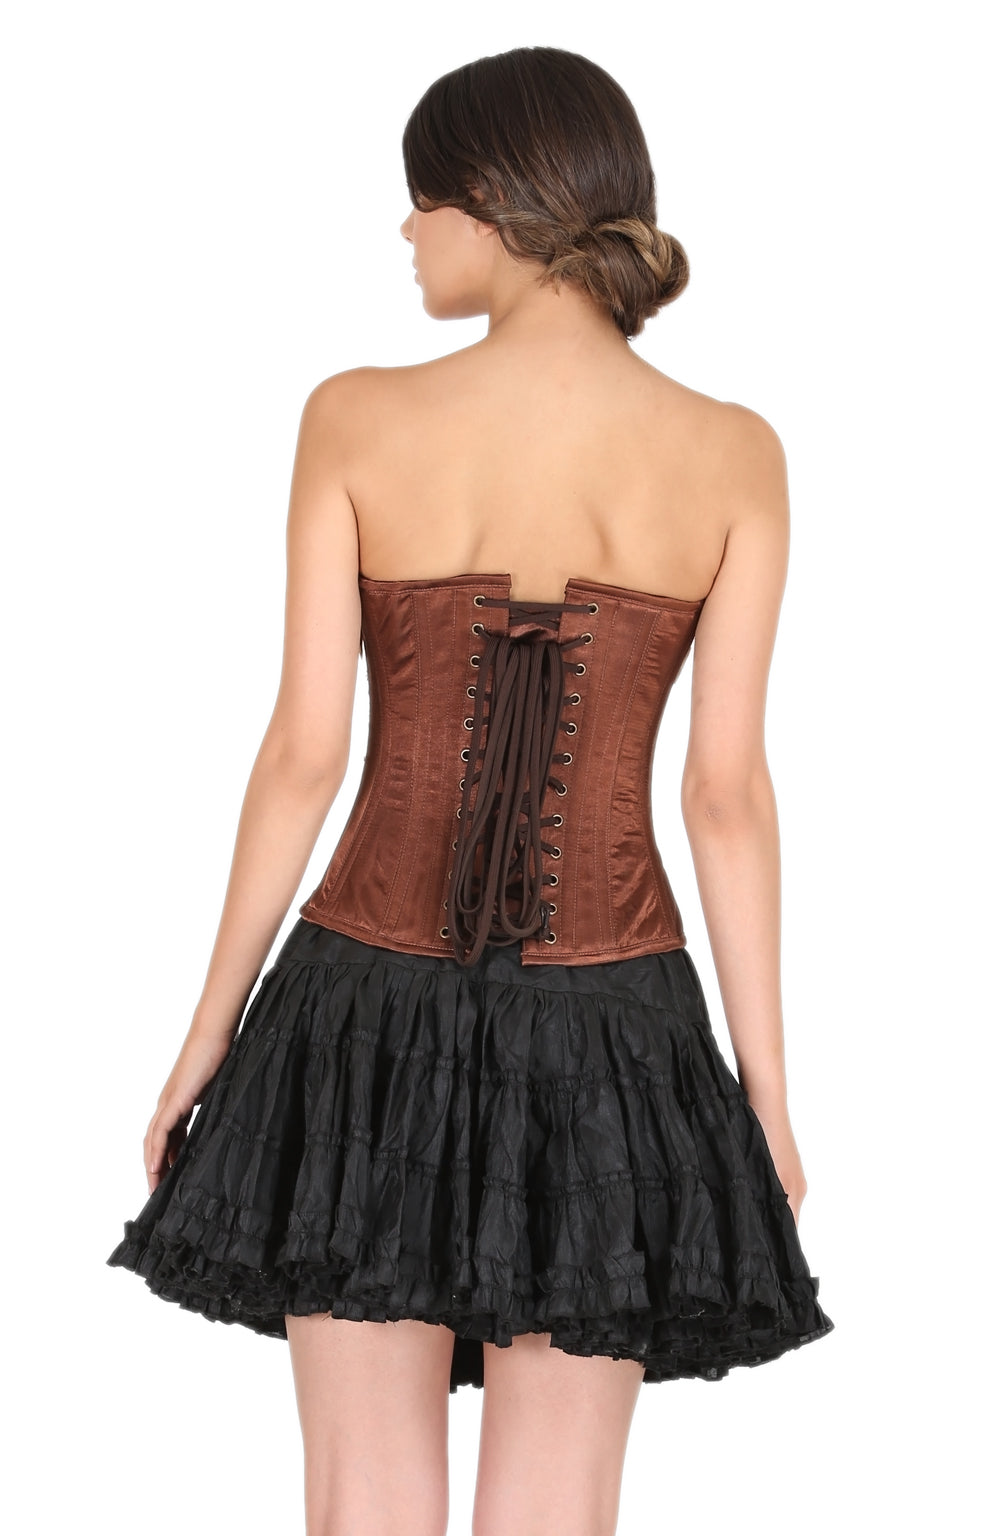 https://corsetsnmore.com/cdn/shop/products/CNM-3M._3_ea5f013f-9a39-4c4c-ac86-568773ed355e.jpg?v=1603008055